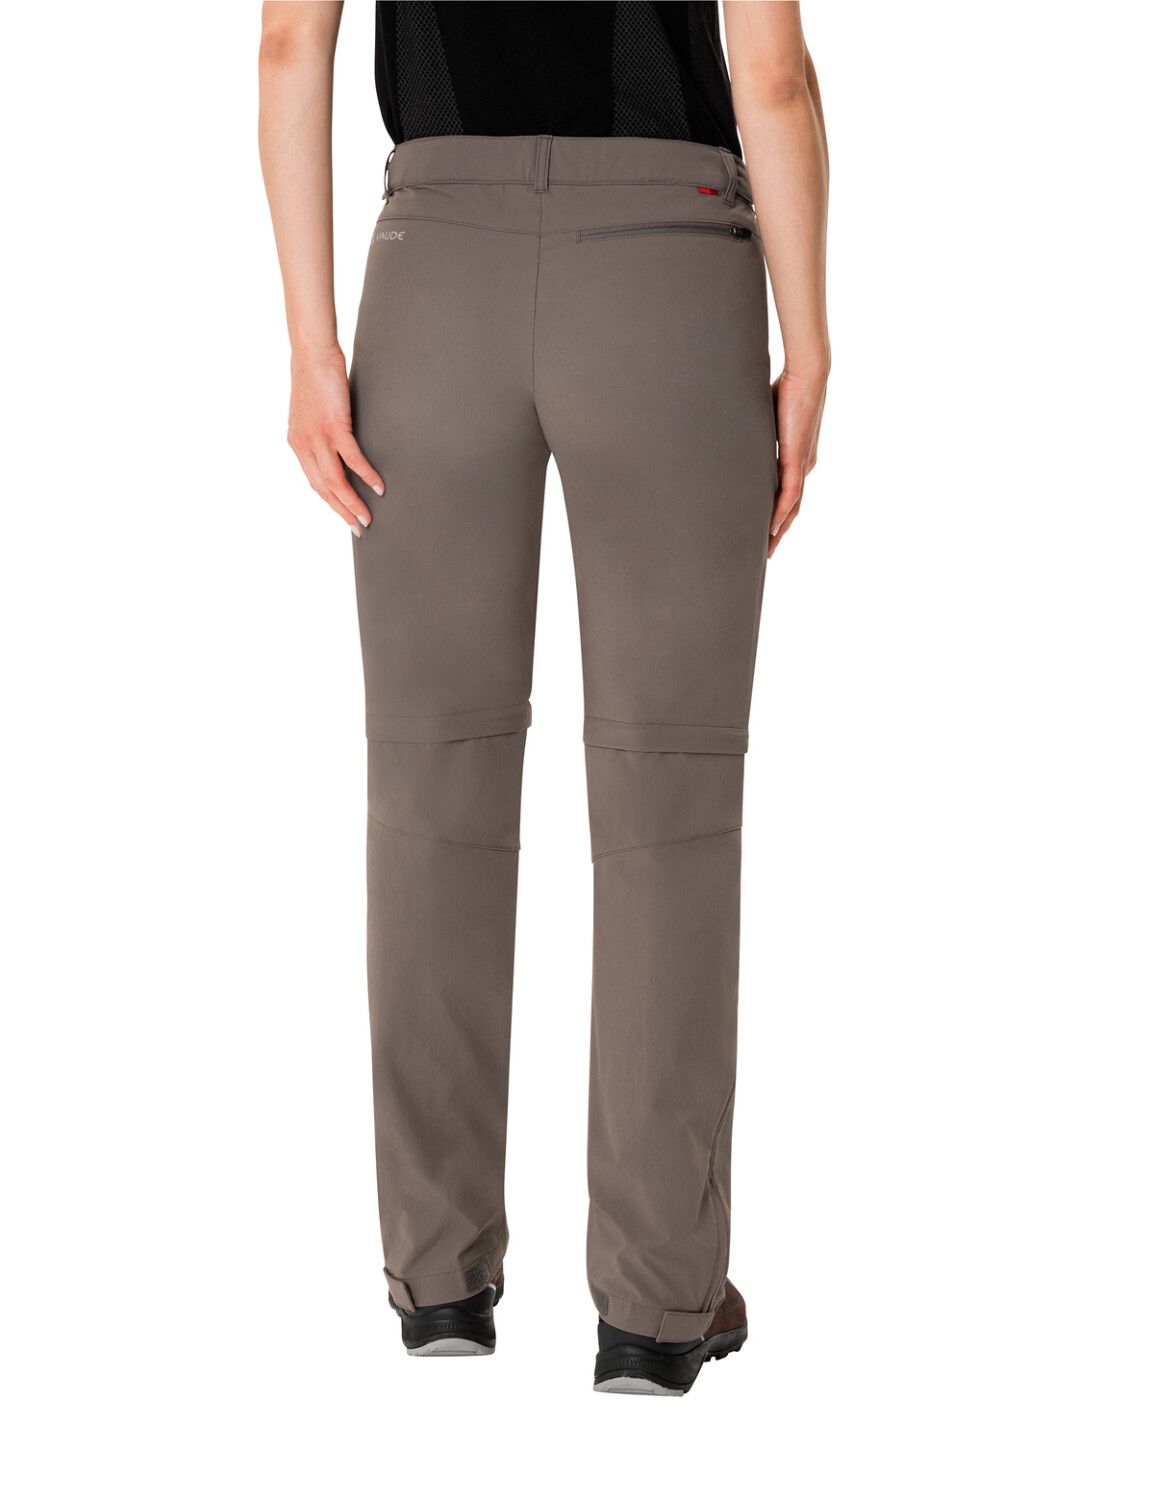 VAUDE Women's Farley Stretch ZO T-Zip Pants (Bild 31)